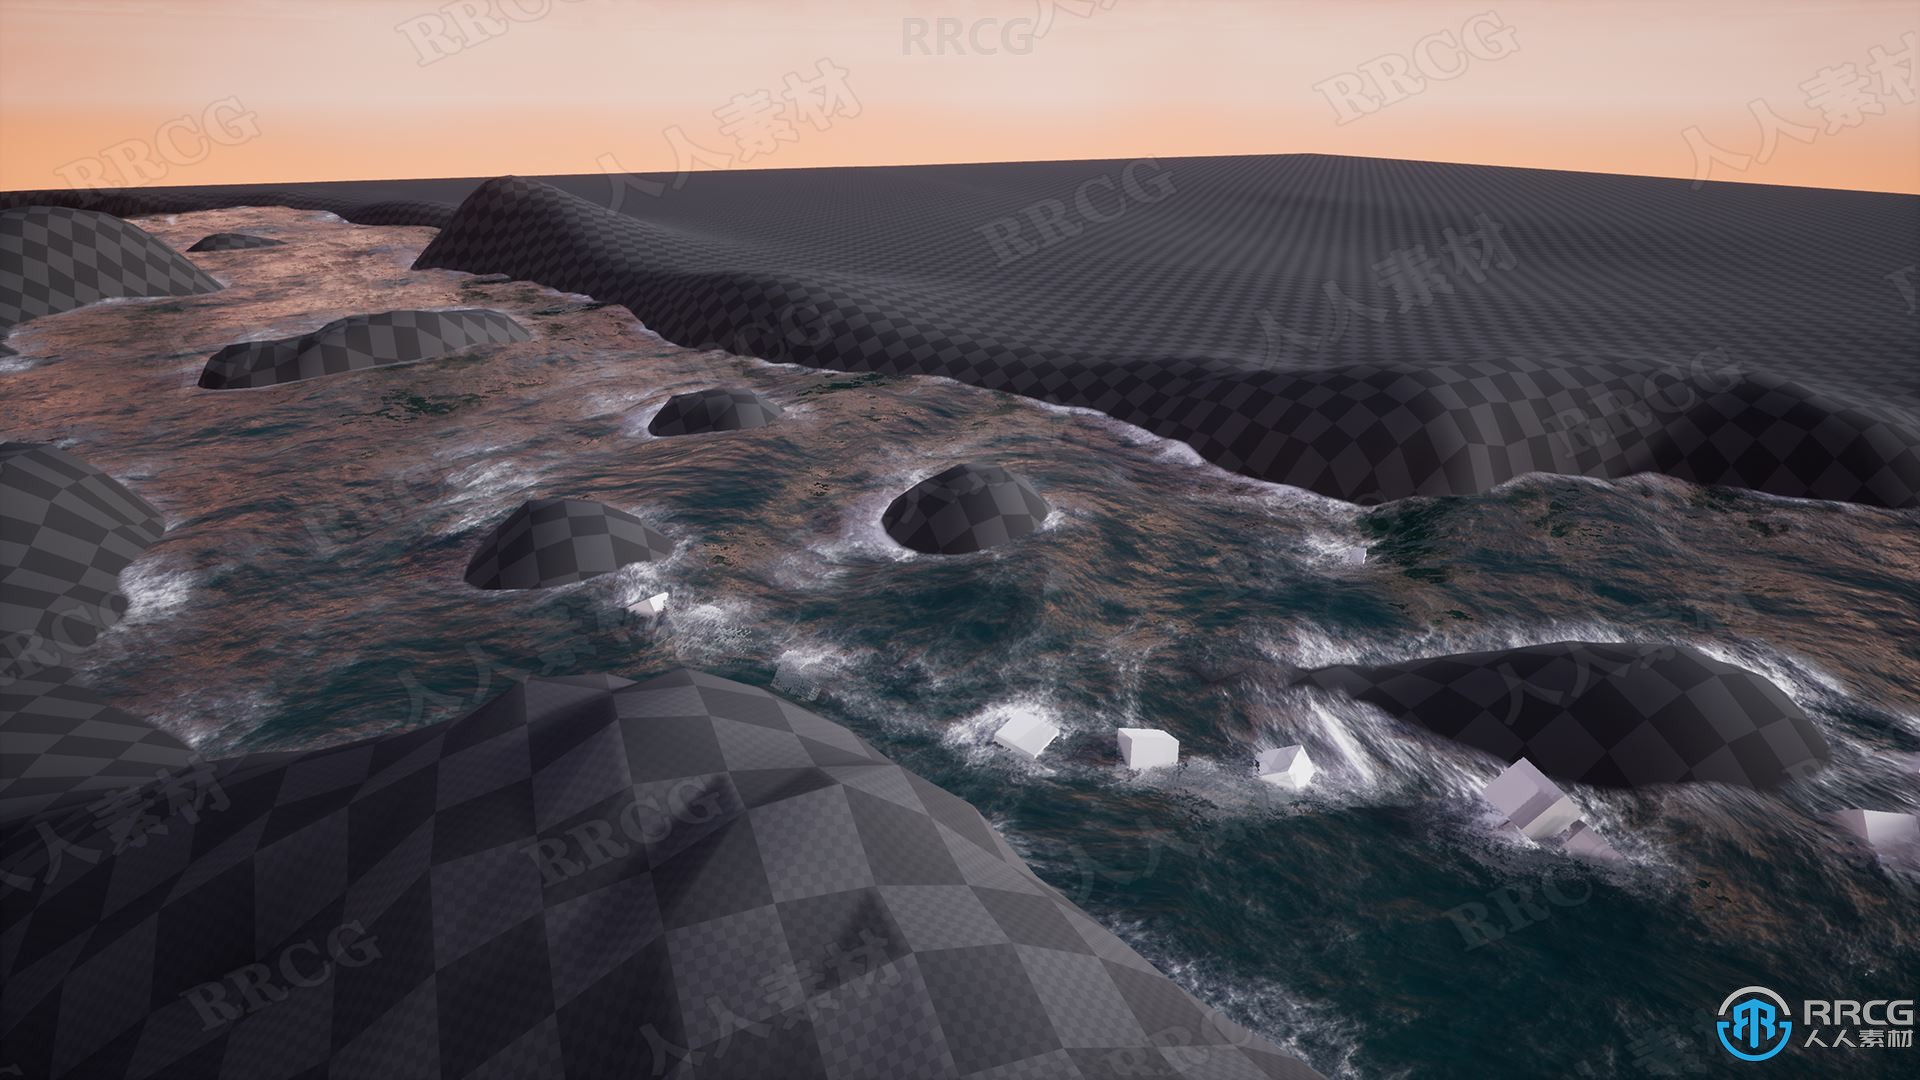 动态对象失真流动浮力河流样条工具Unreal Engine游戏素材资源